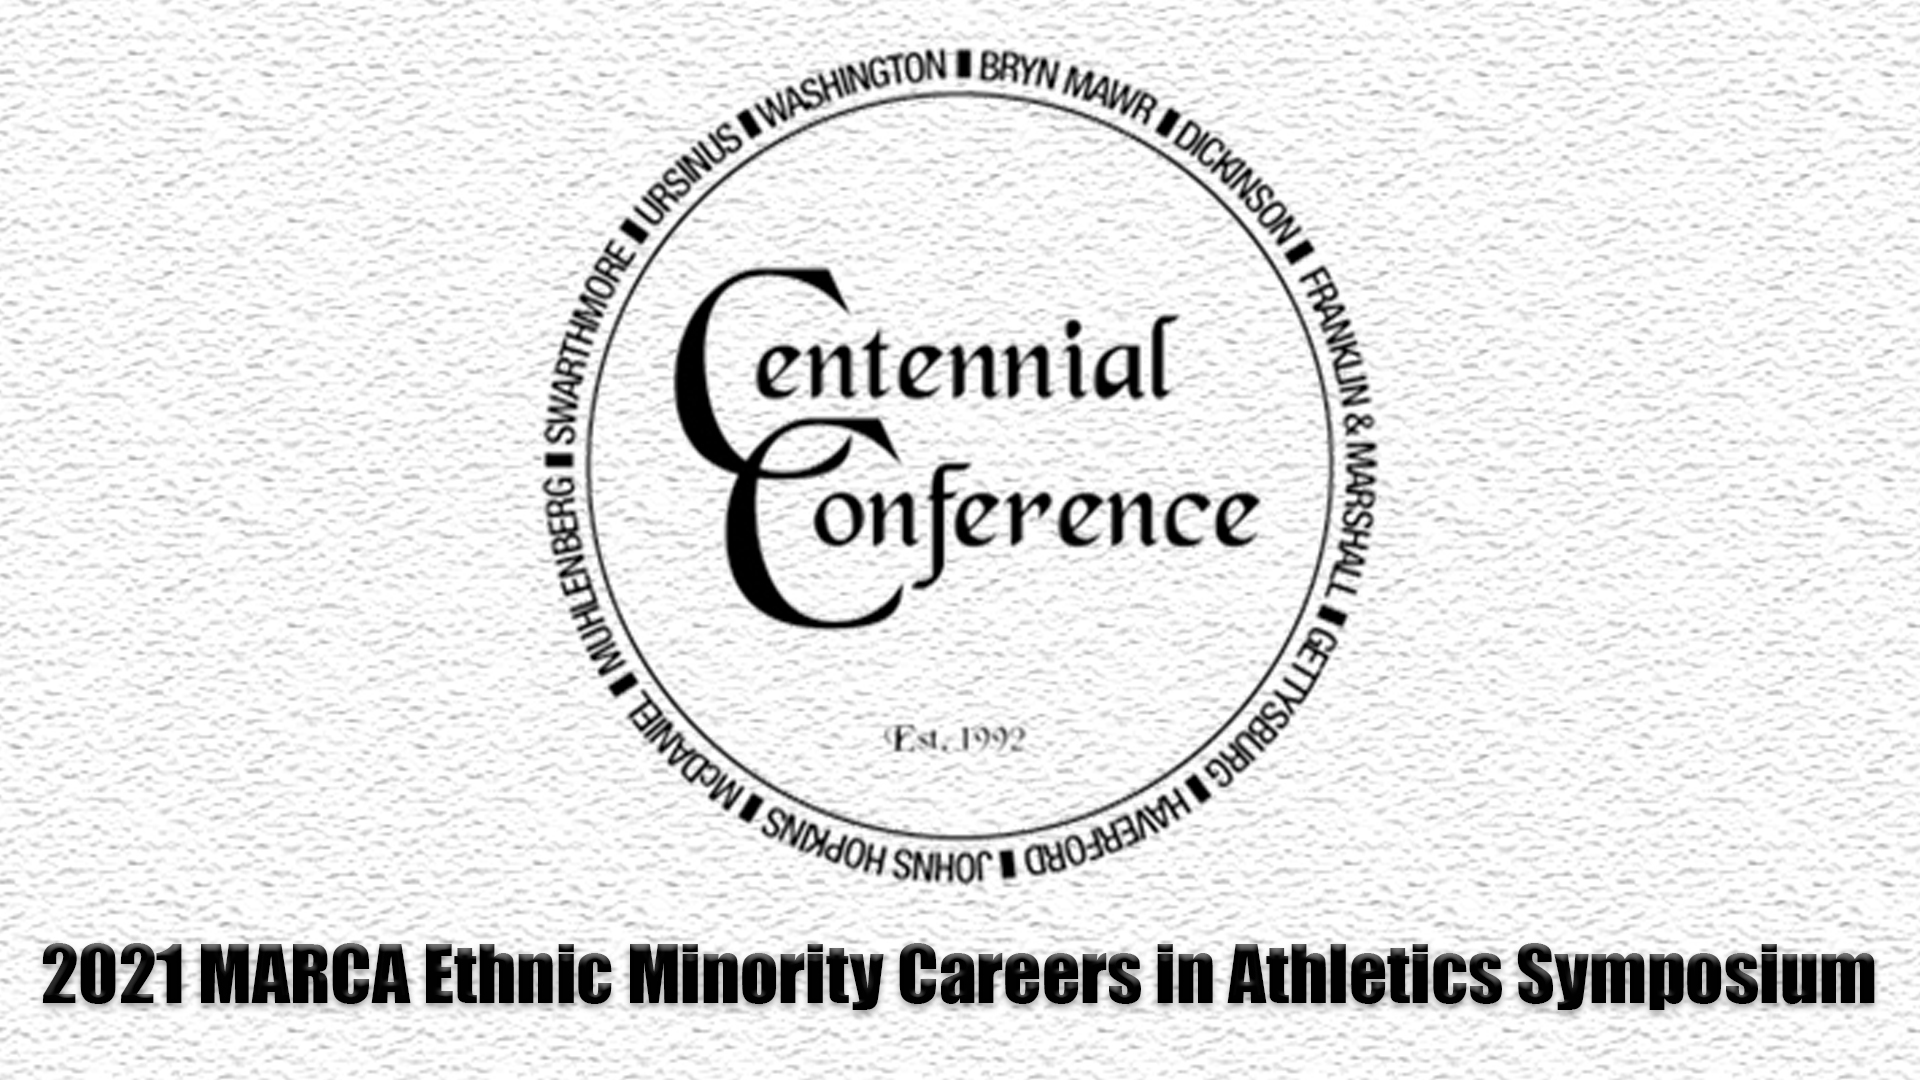 2021 MARCA Ethnic Minority Careers in Athletics Symposium